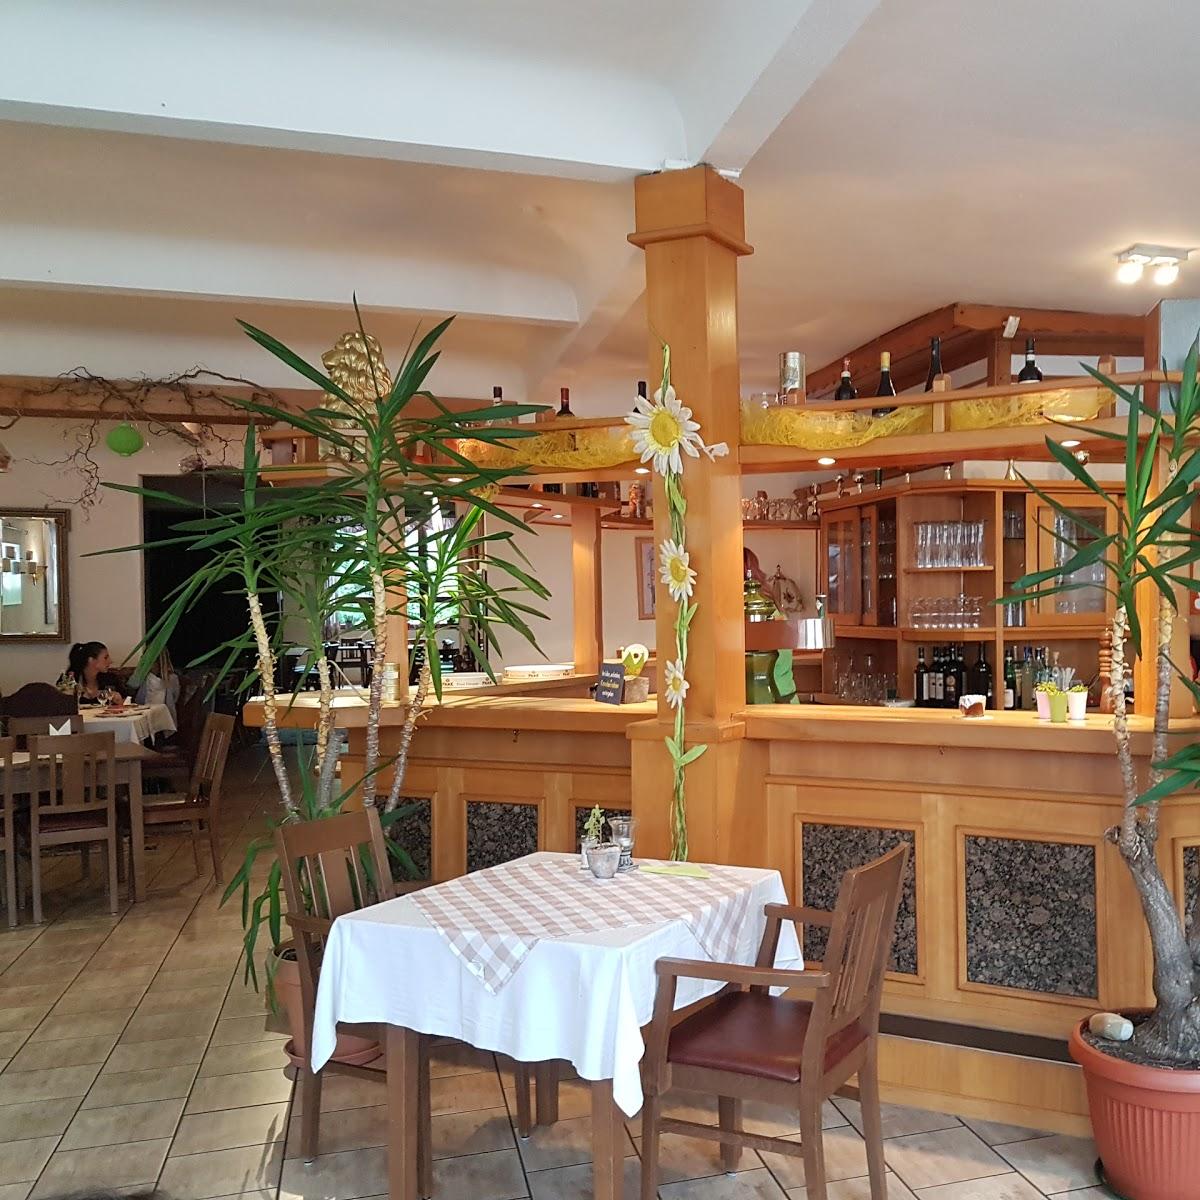 Restaurant "La Bandiera" in Zweibrücken